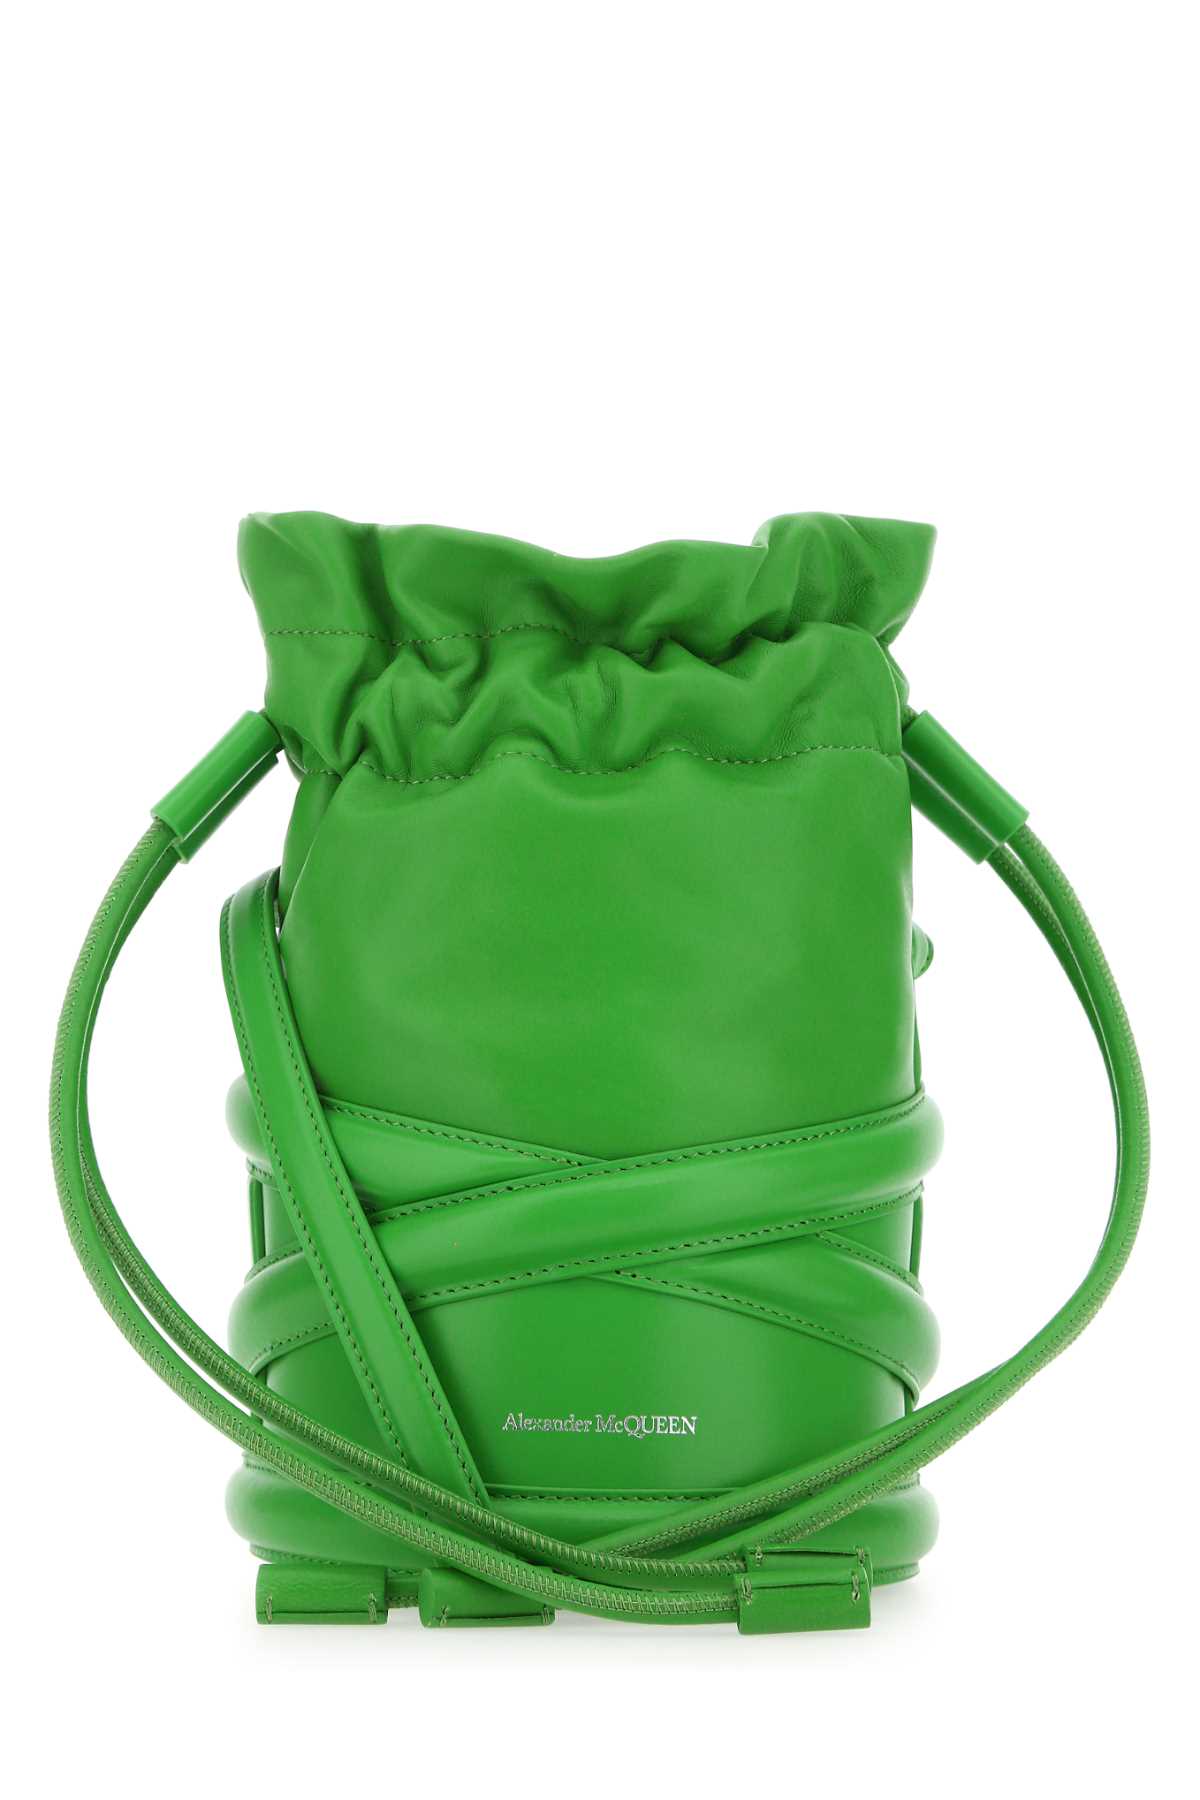 Alexander McQueen Grass Green Leather Bucket Bag